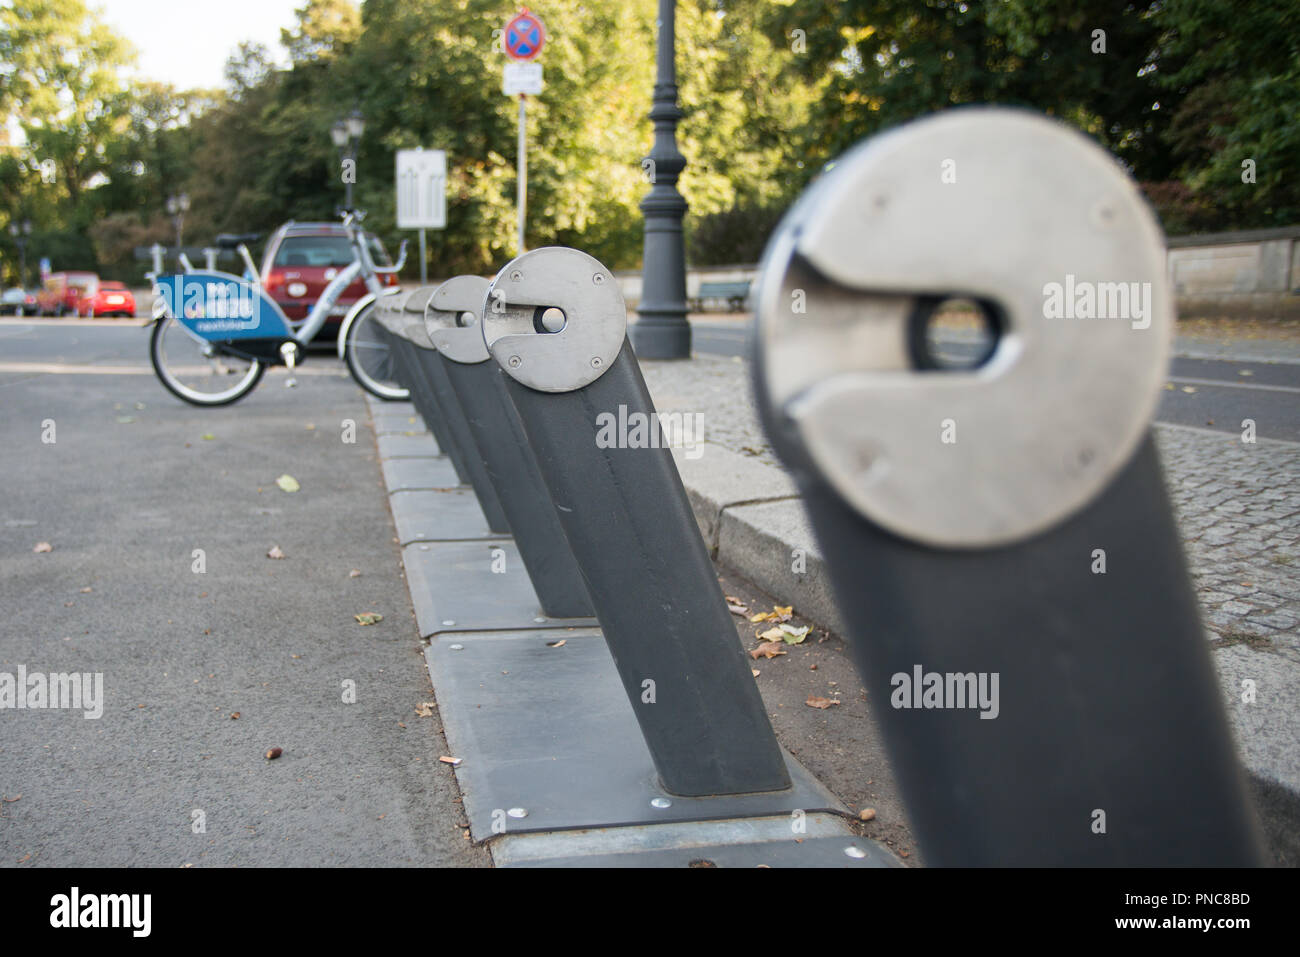 Un Leihrad Bike Sharing Station en Berlín. Foto de stock